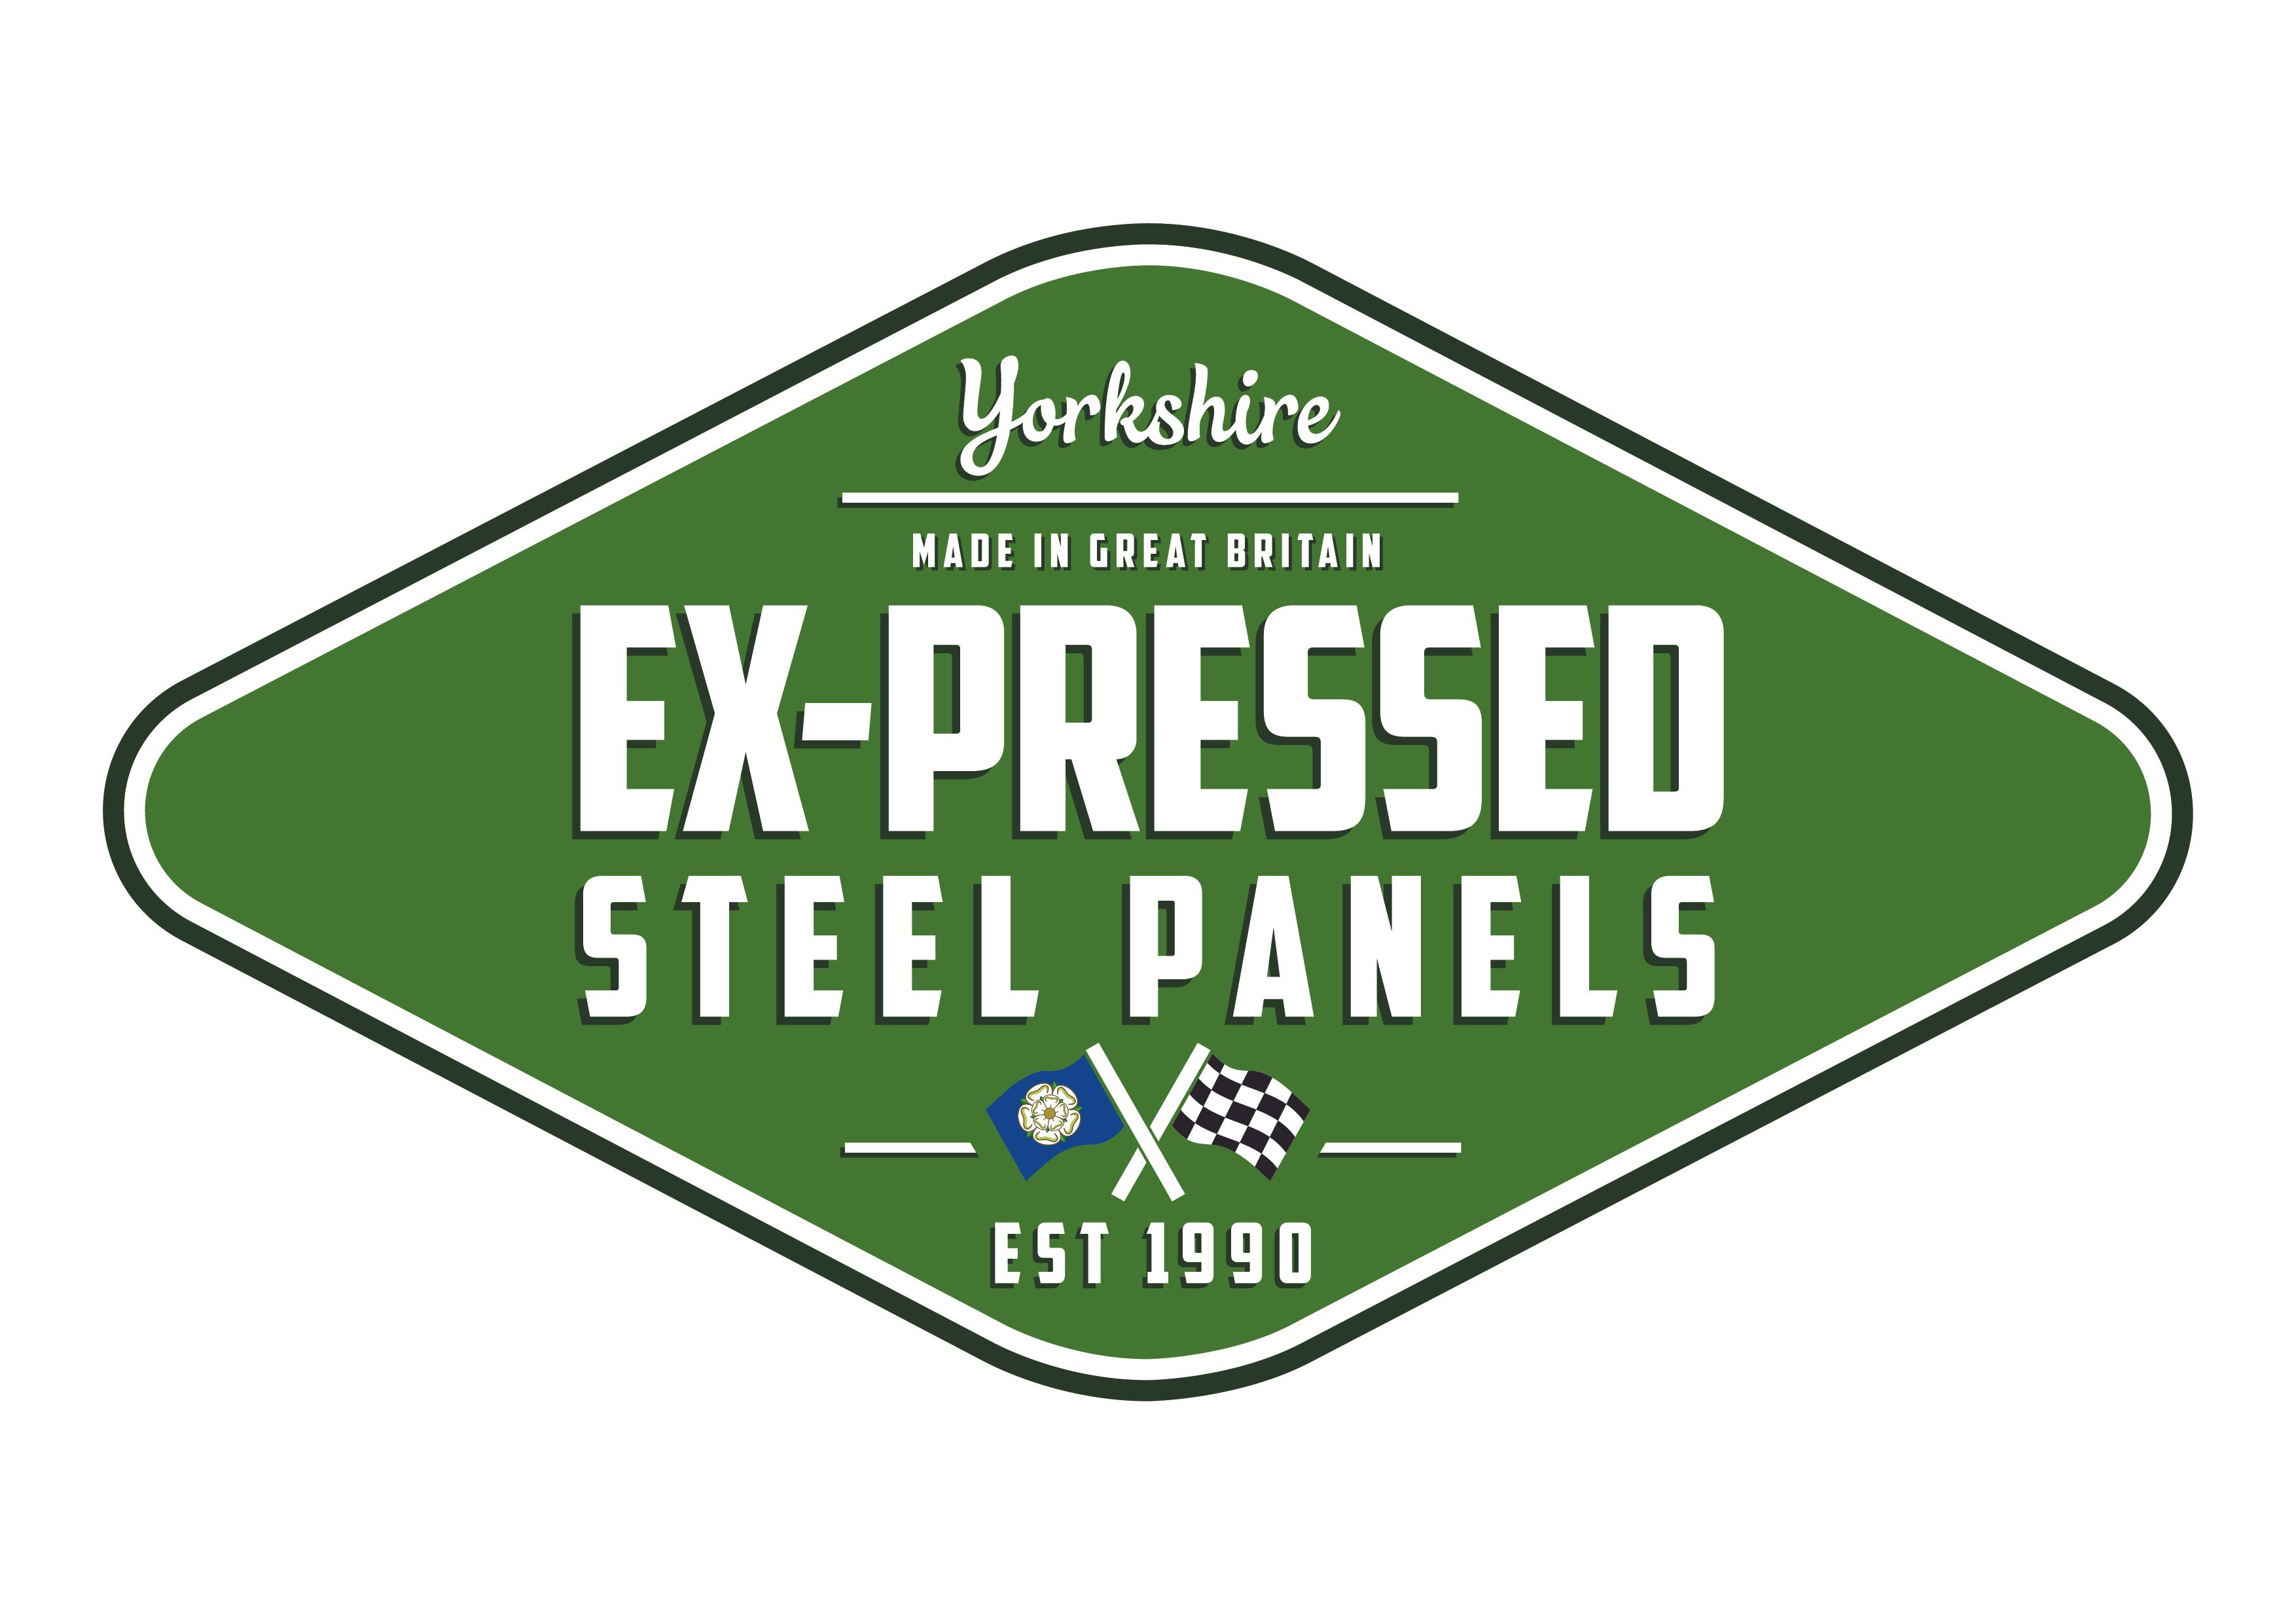 Ex-Pressed Steel Panels Ltd